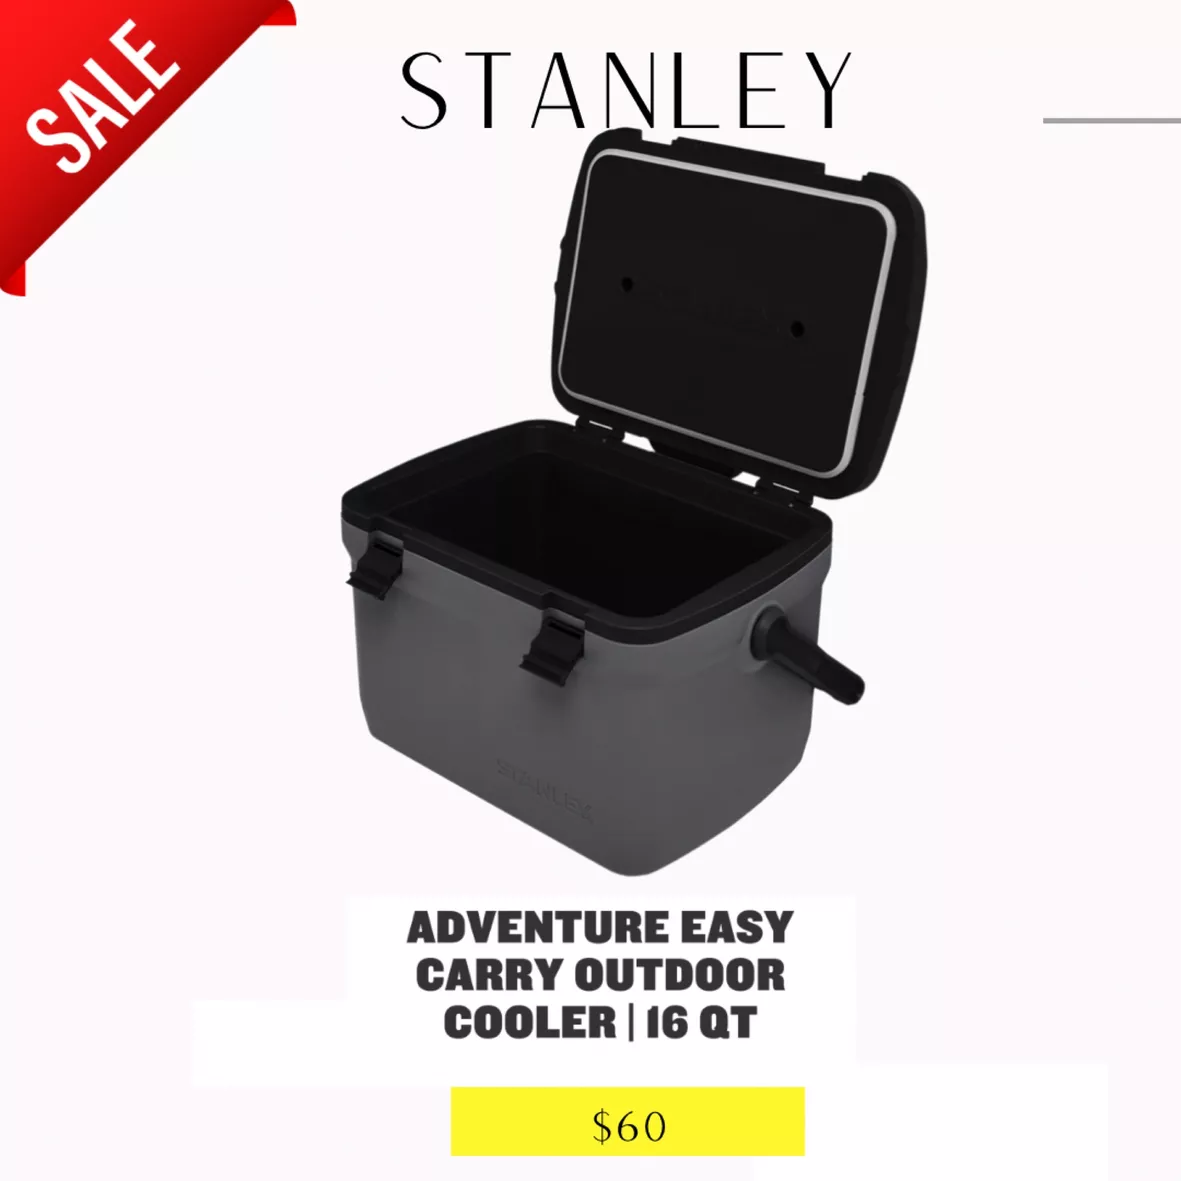 Stanley Adventure 16 Cooler